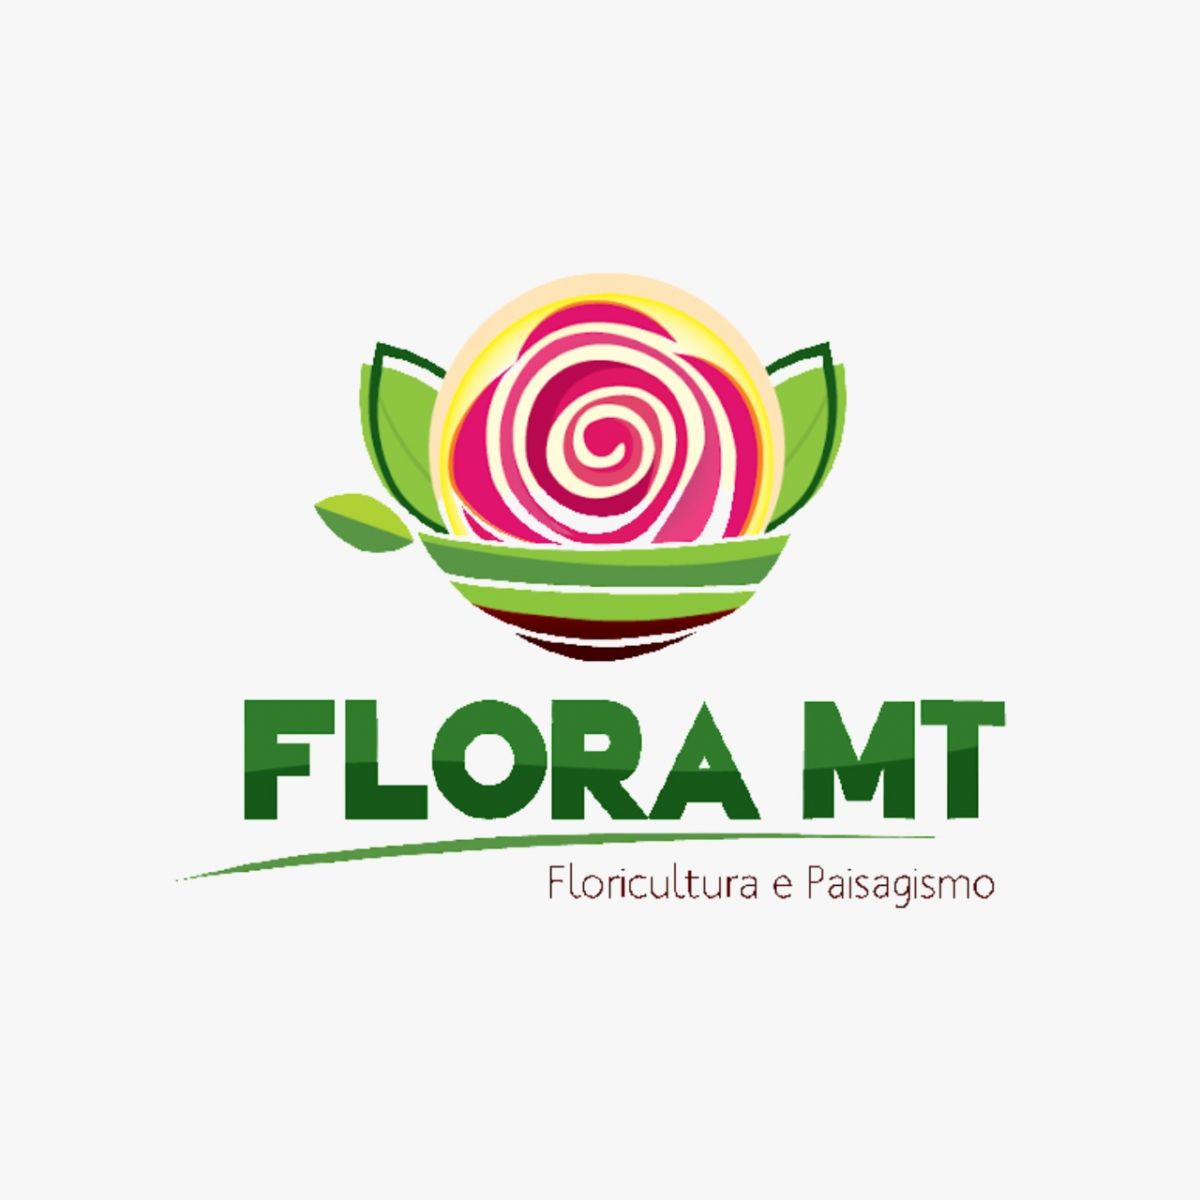 Flora MT